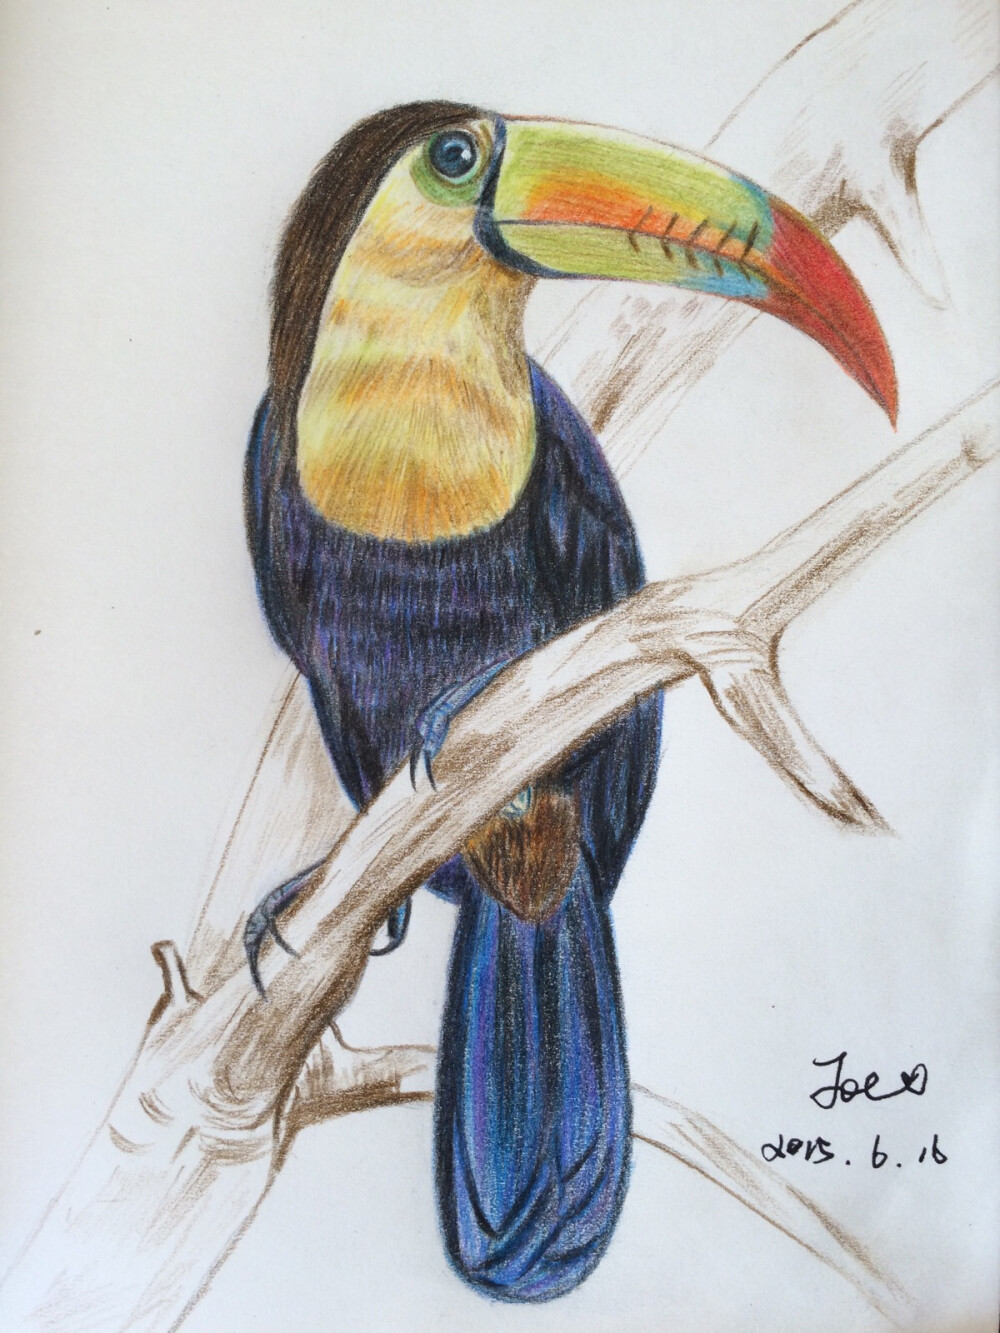 刚刚完成的彩色铅笔绘厚嘴巨嘴鸟第一次画还算有点天赋